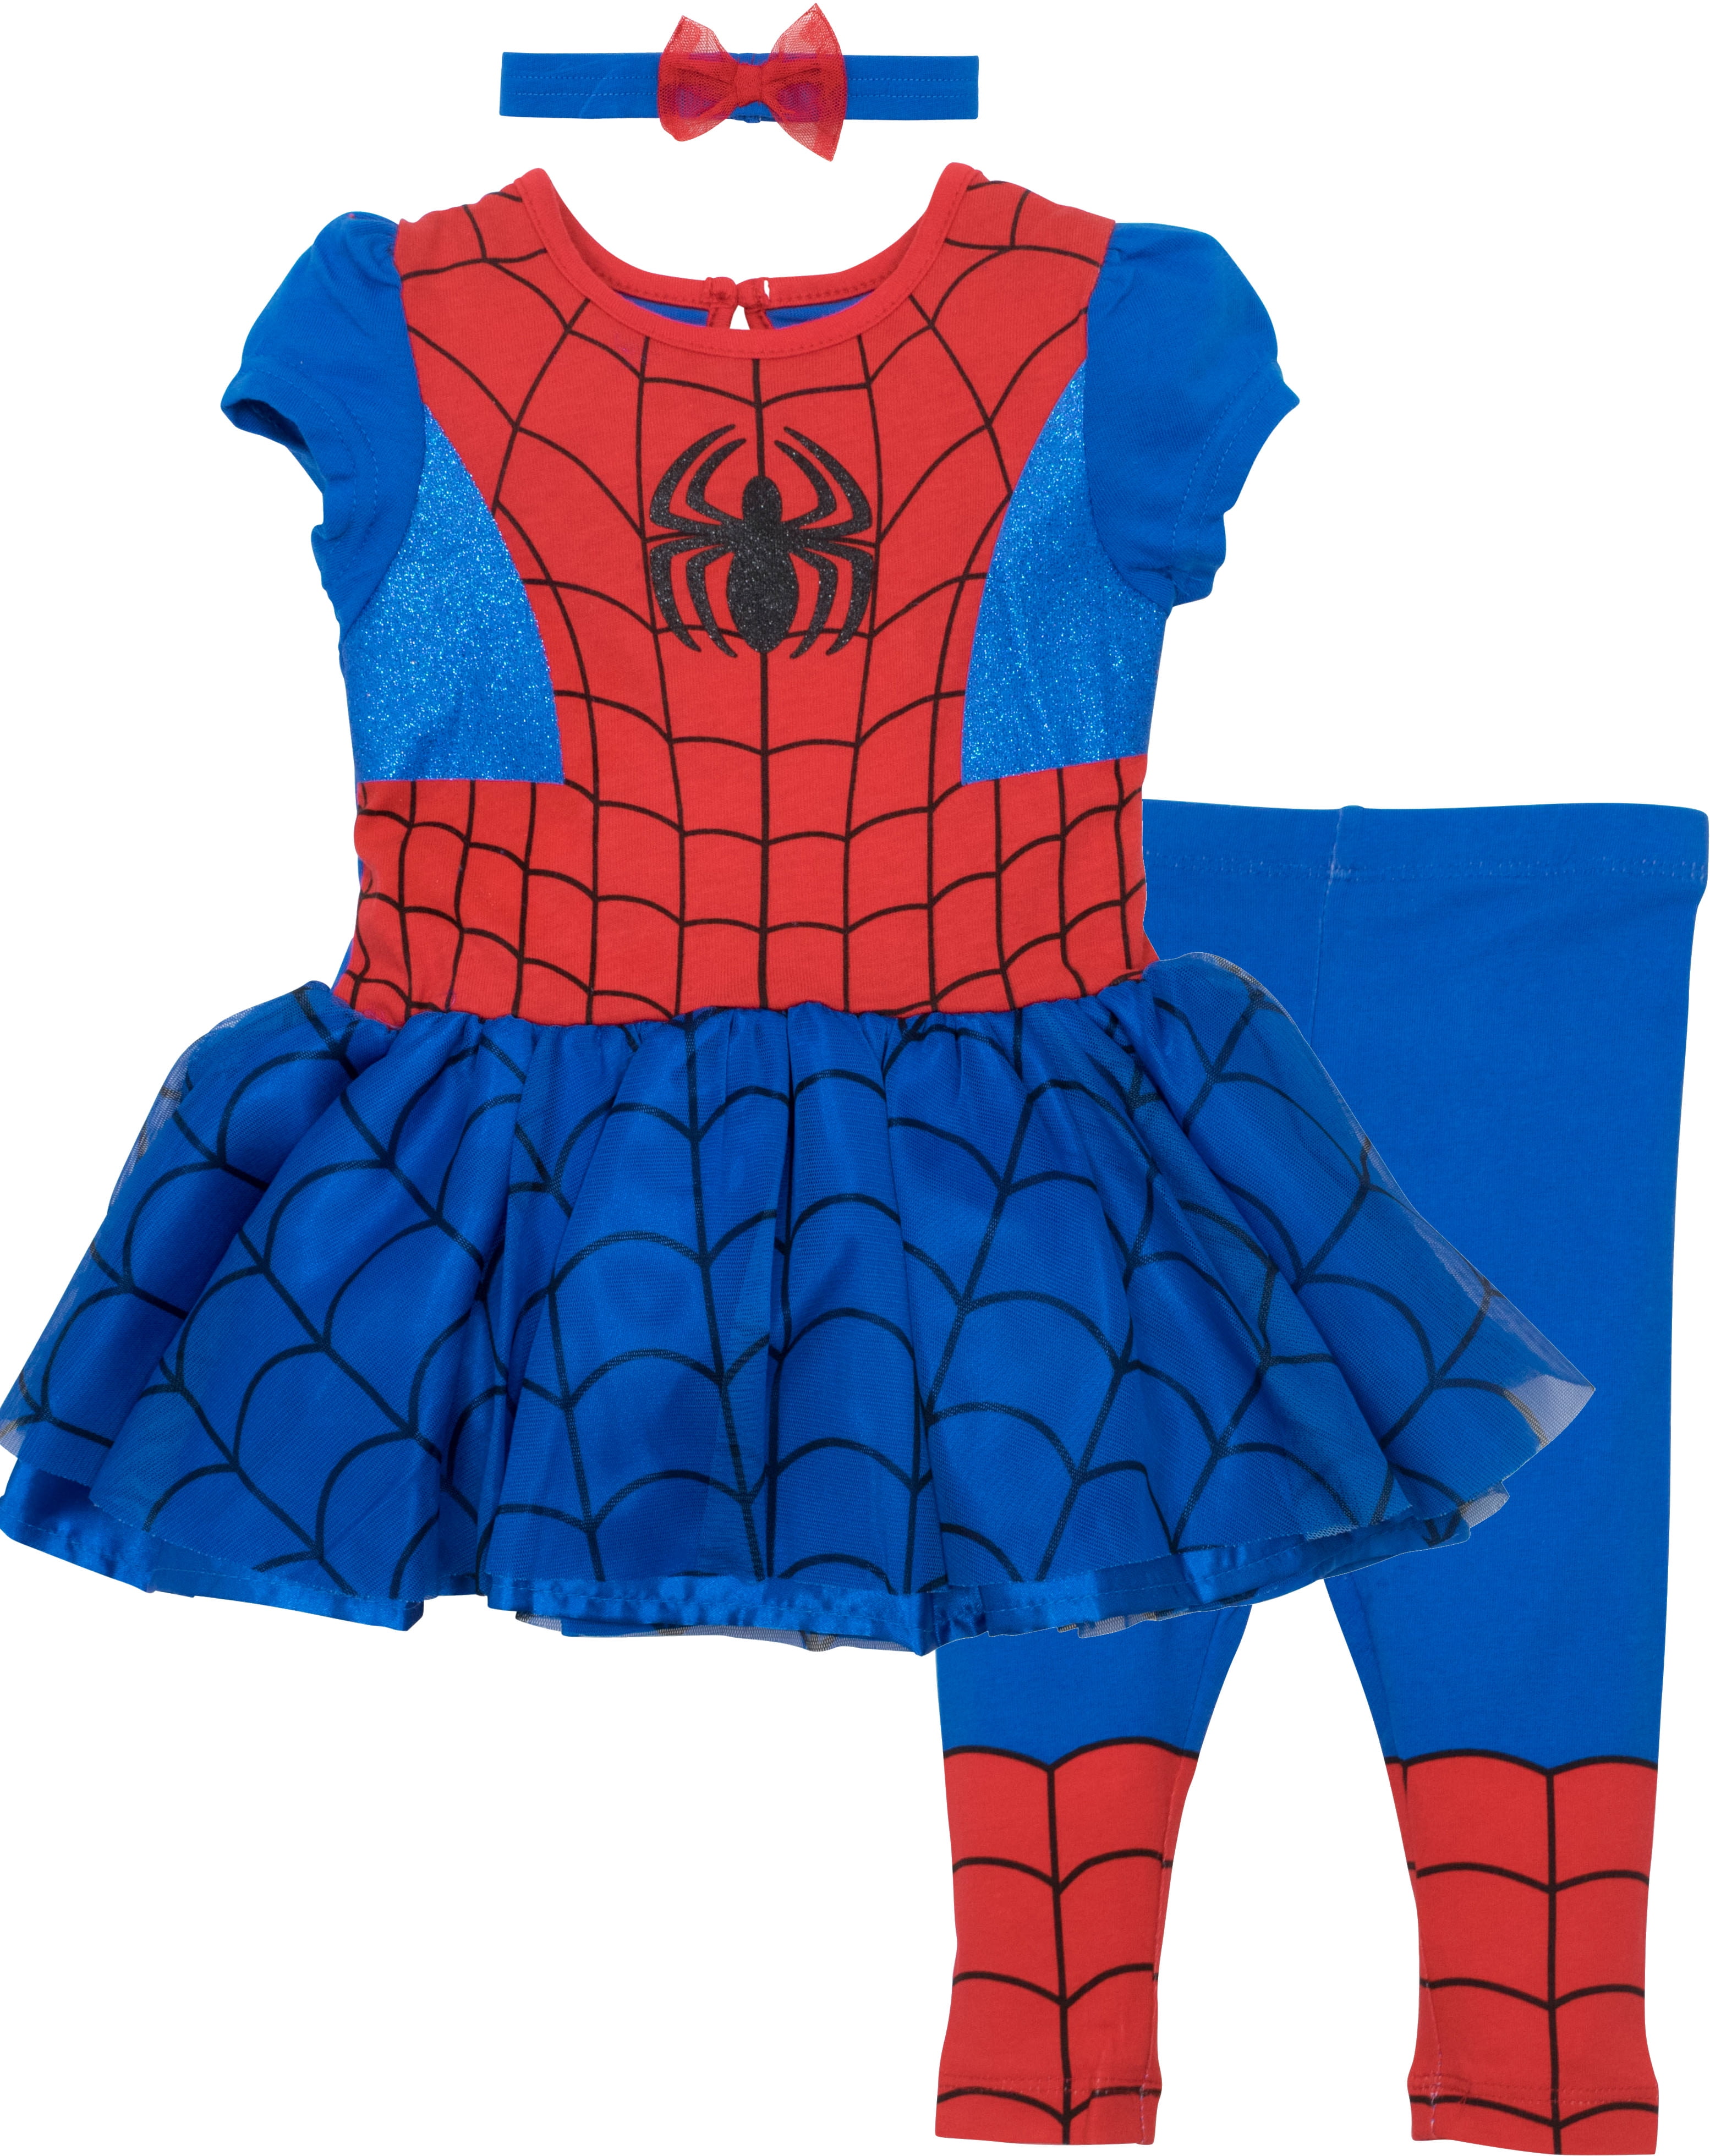 spider man dress